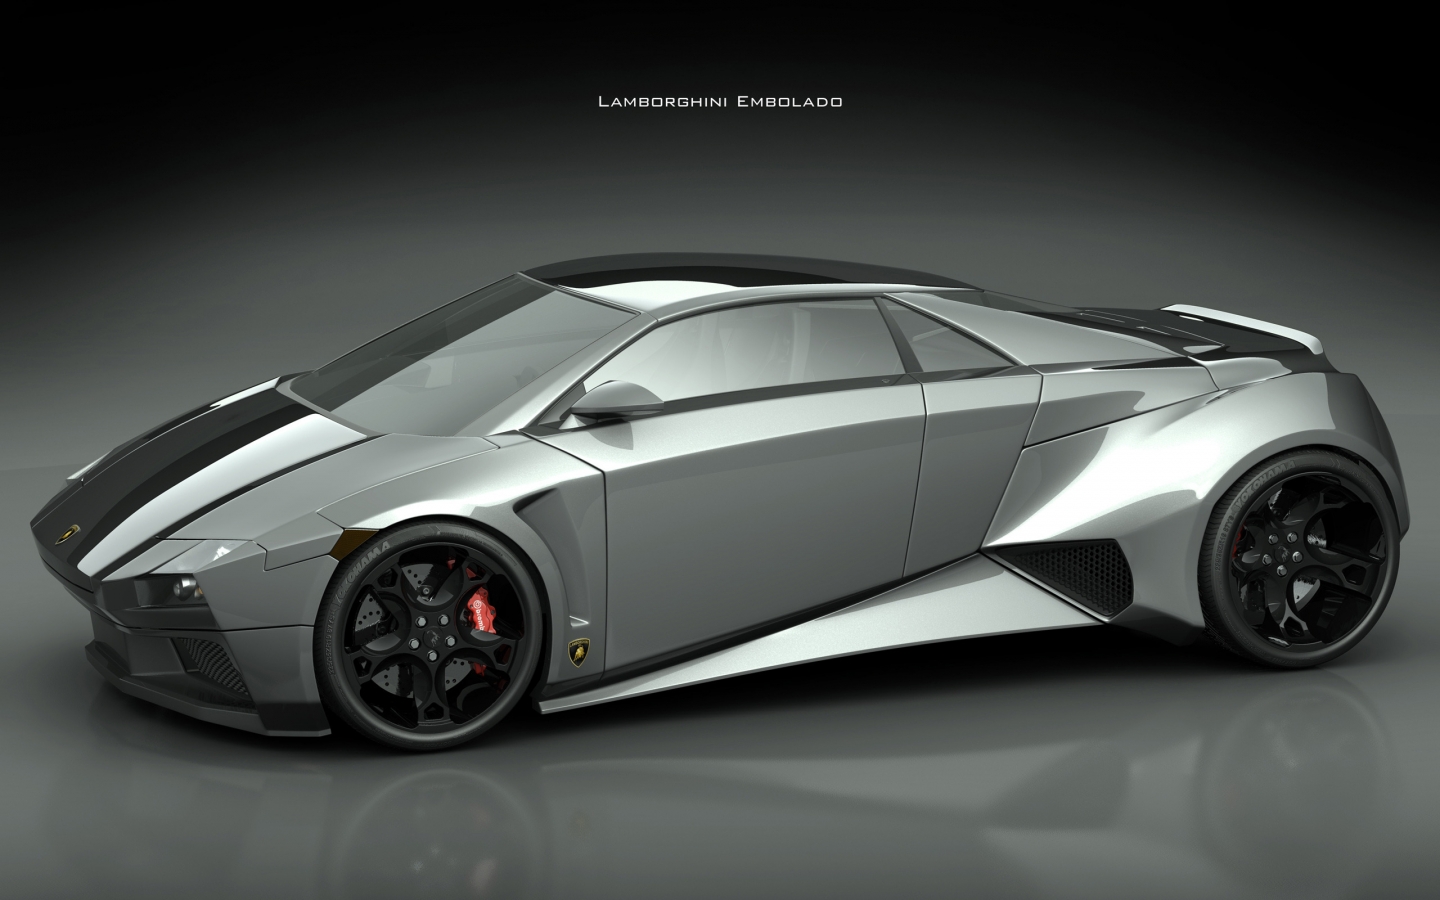 Lamborghini Embolado for 1440 x 900 widescreen resolution